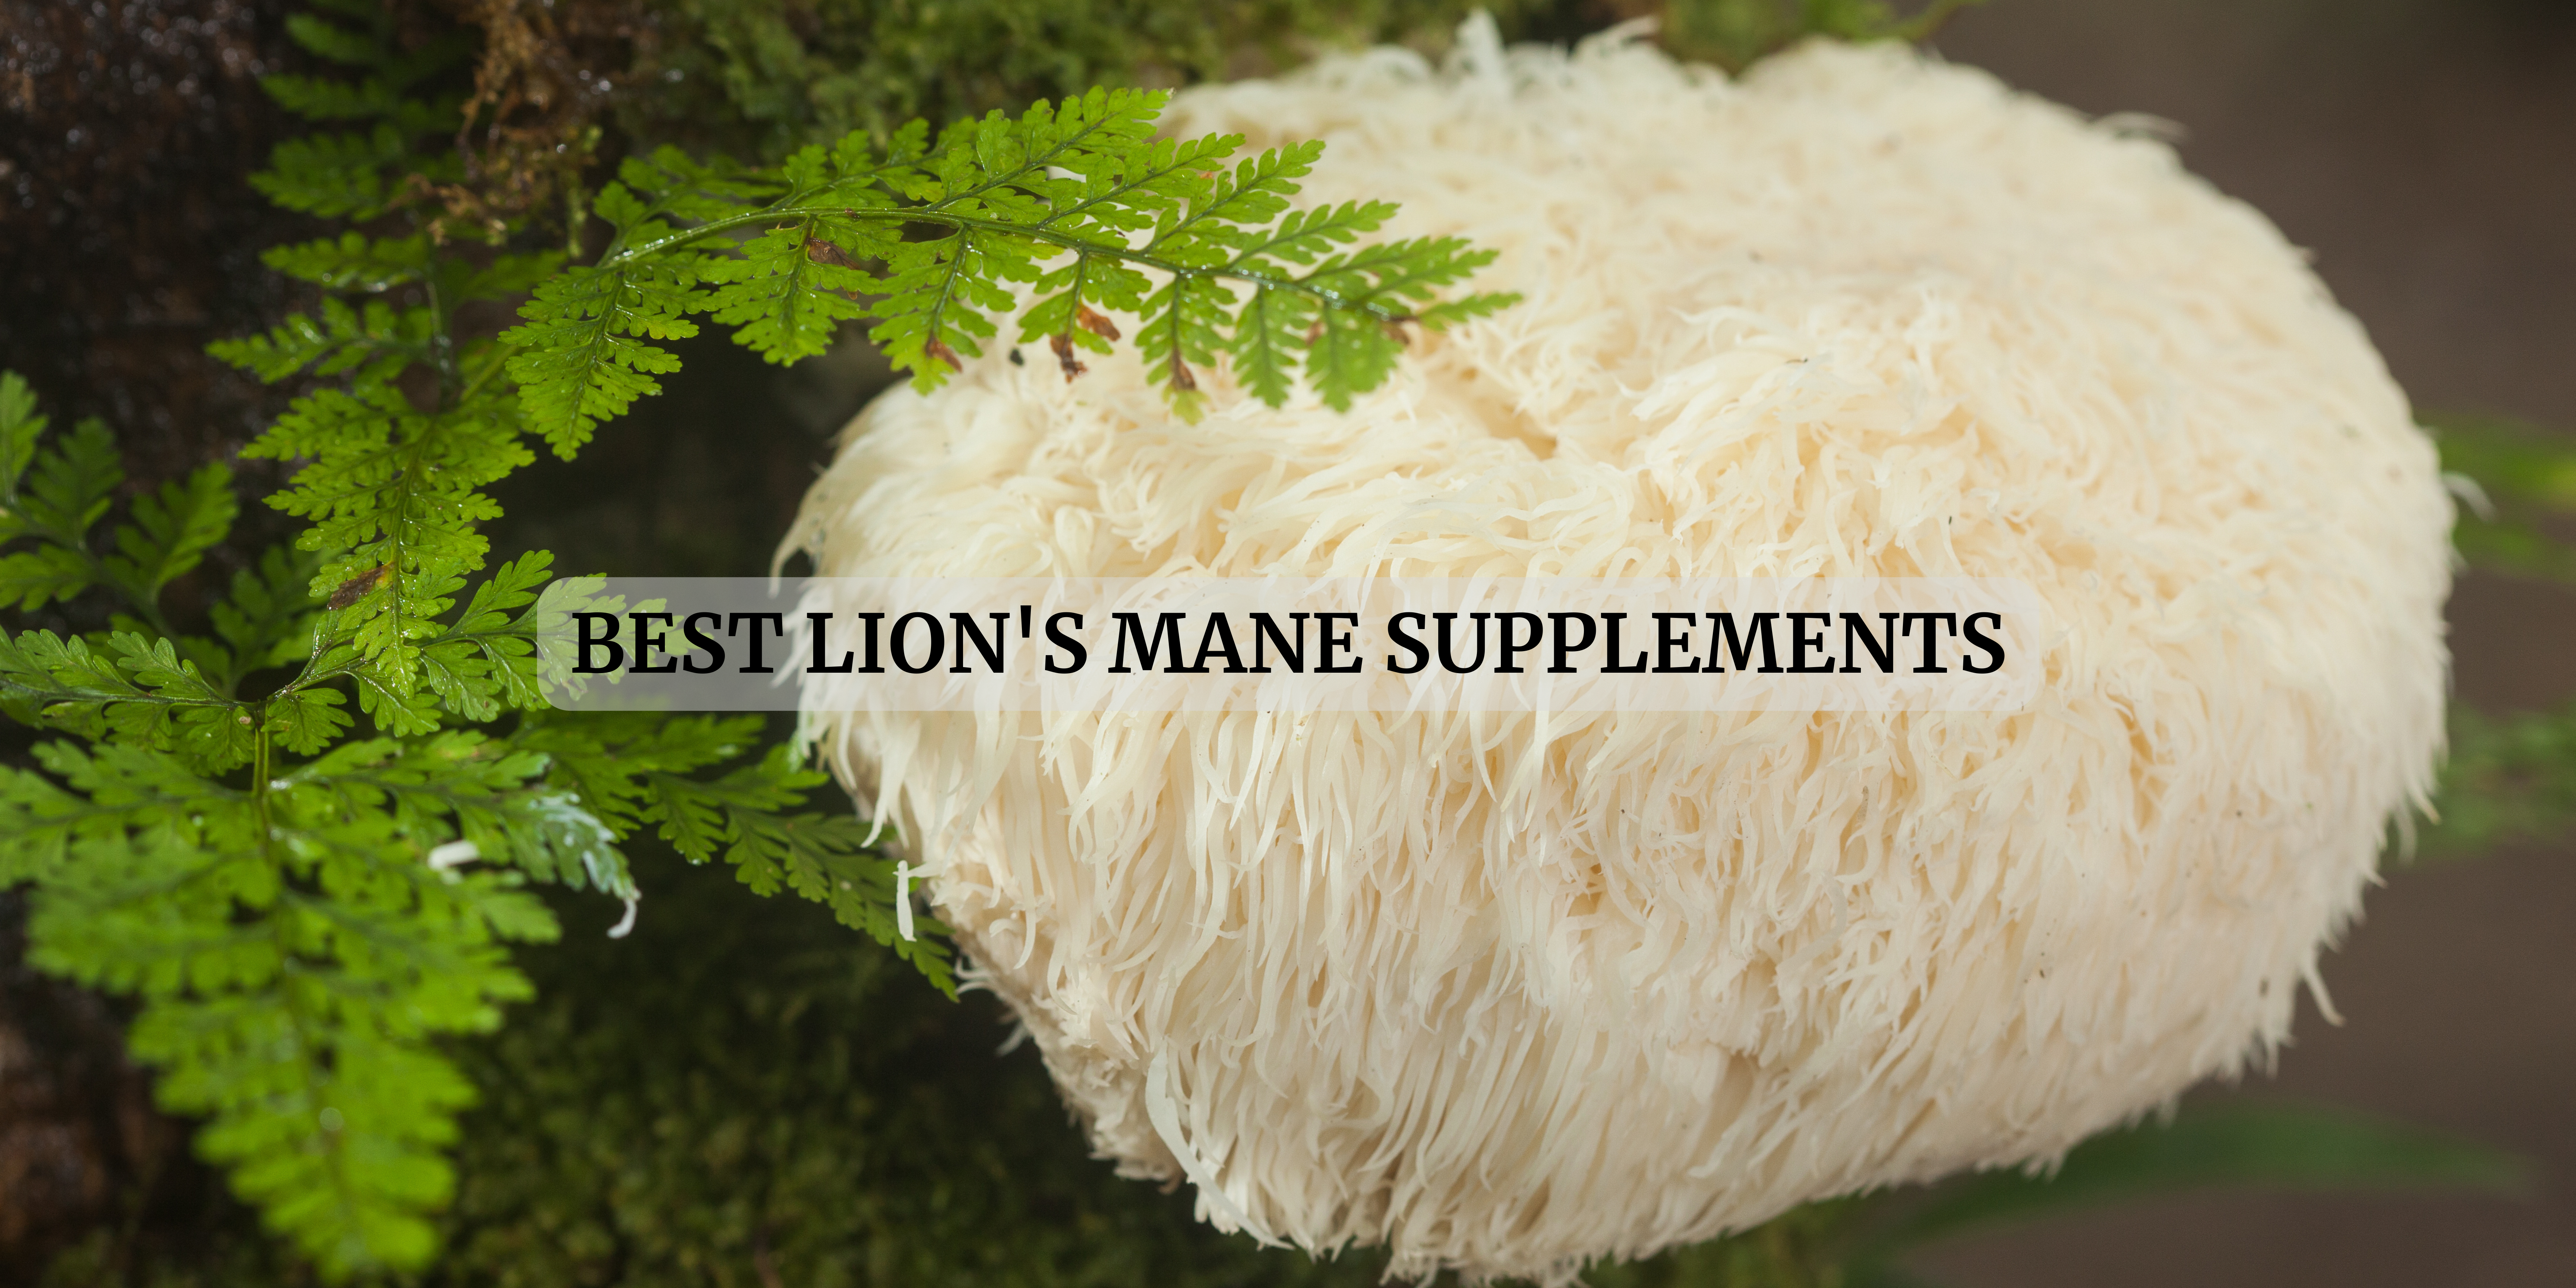 lion's mane supplements in Australia